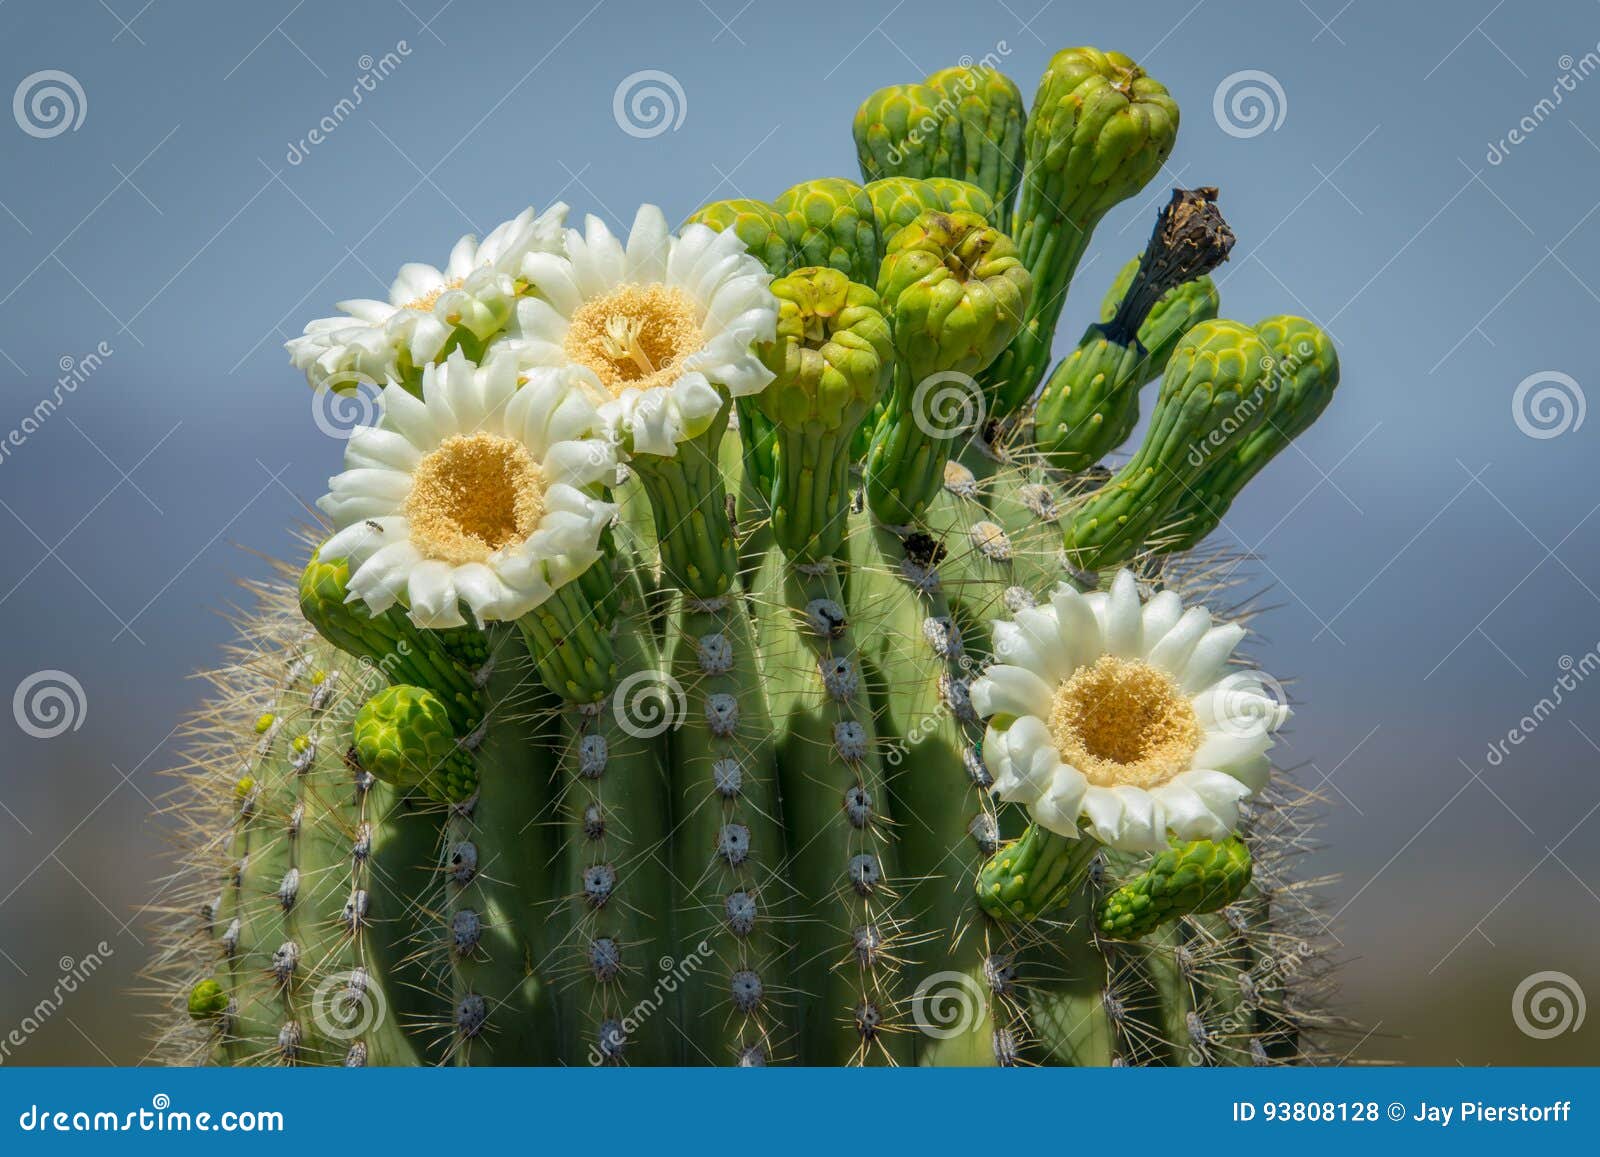 Saguaro Cactus Blooms Stock Photo Image Of Arizona Southwest 93808128